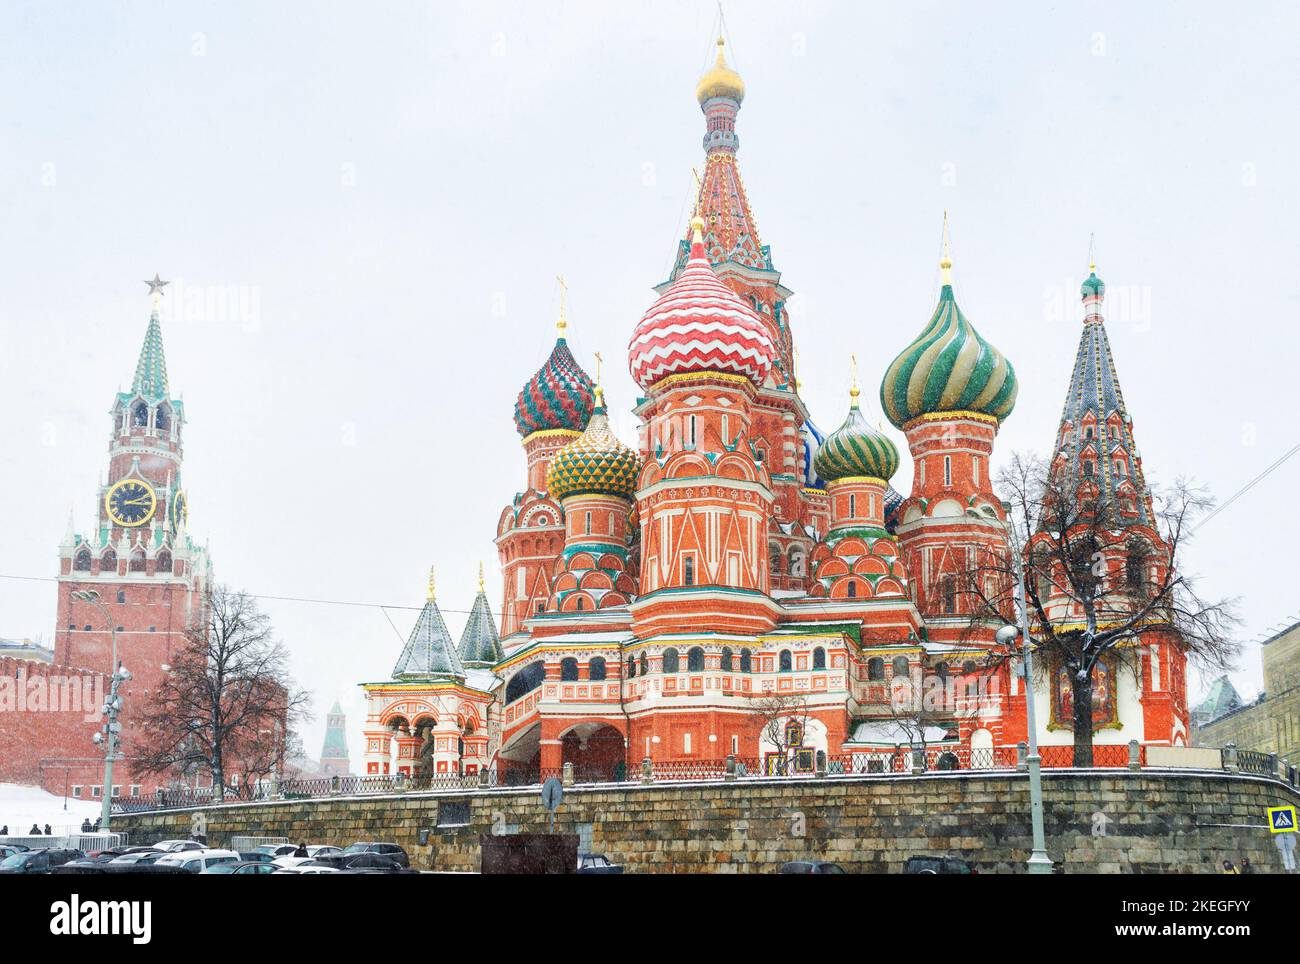 Cathédrale Saint-Basile sur la place Rouge en hiver, Moscou, Russie. Paysages de célèbres bâtiments historiques, monuments de Moscou pendant la chute de neige. Les sites anciens Banque D'Images